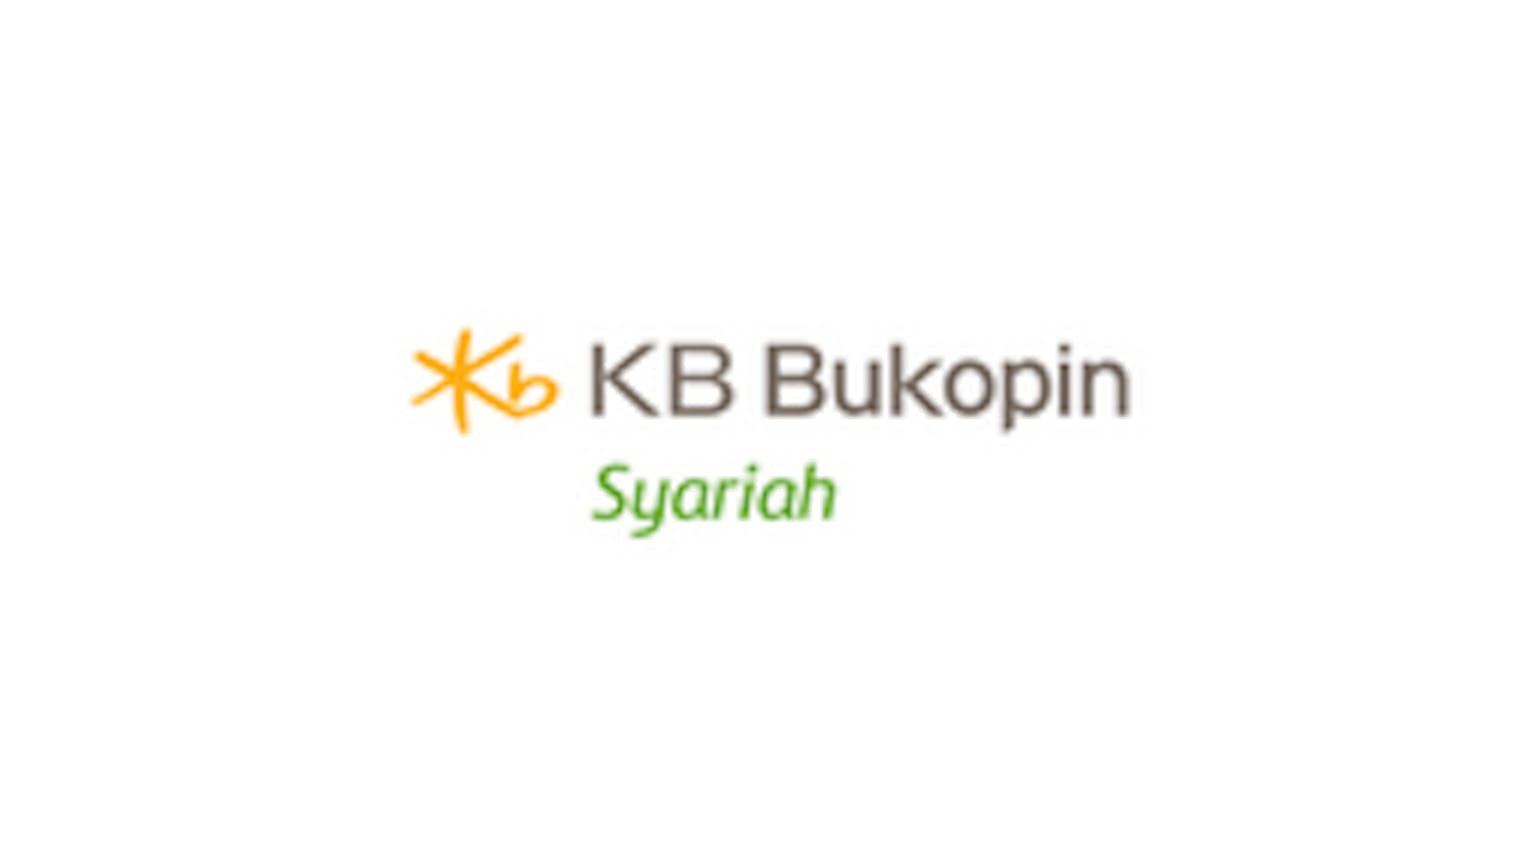 Deposito iB on Call KB Bukopin Syariah